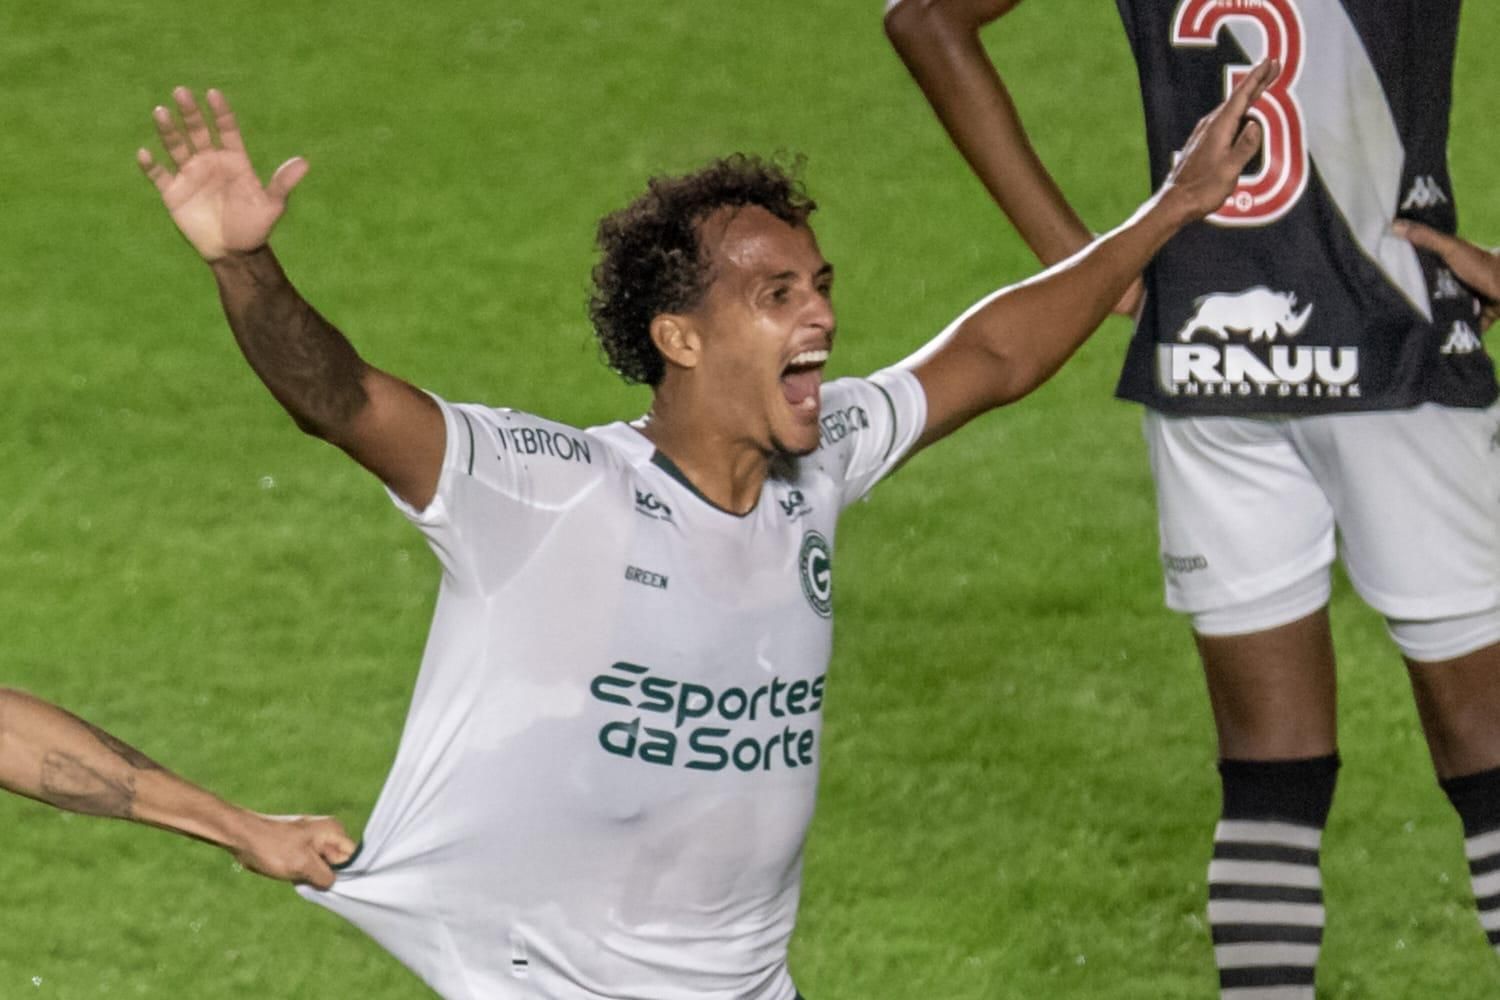 Vila Nova bate Vasco por 1 a 0 e volta a vencer após 13 jogos